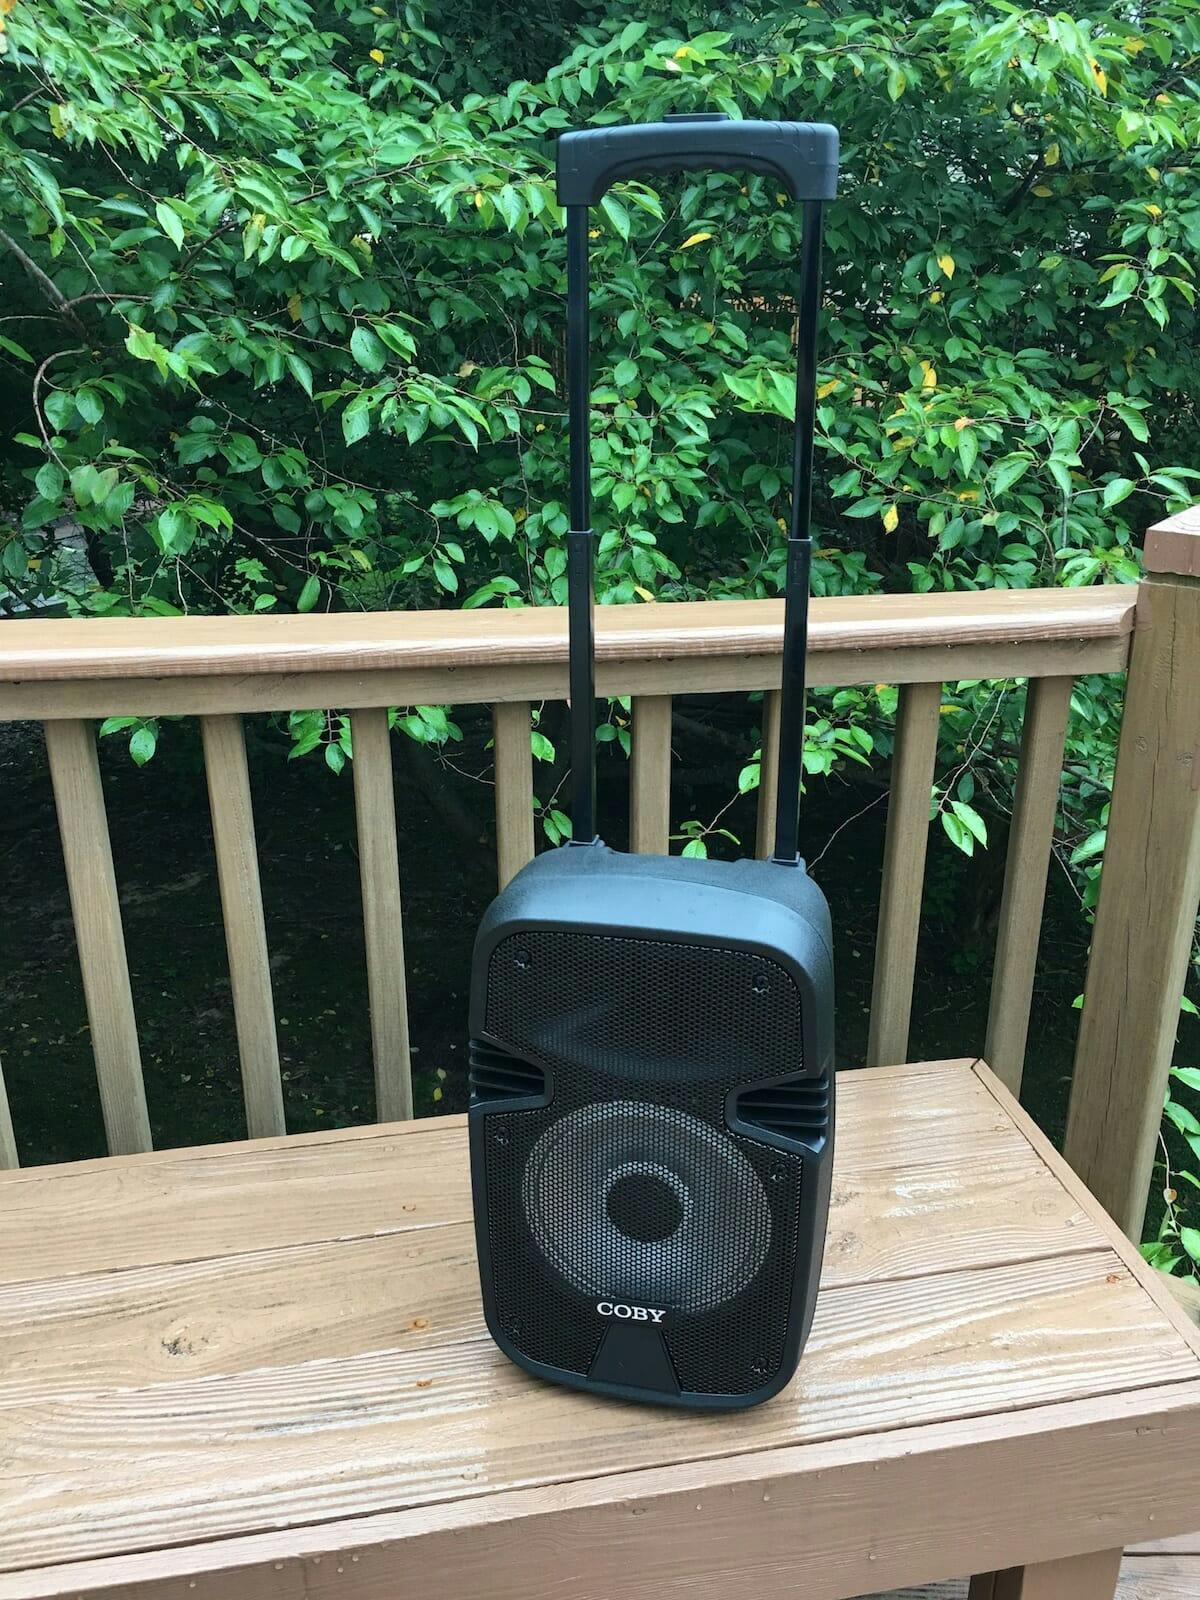 BT speaker